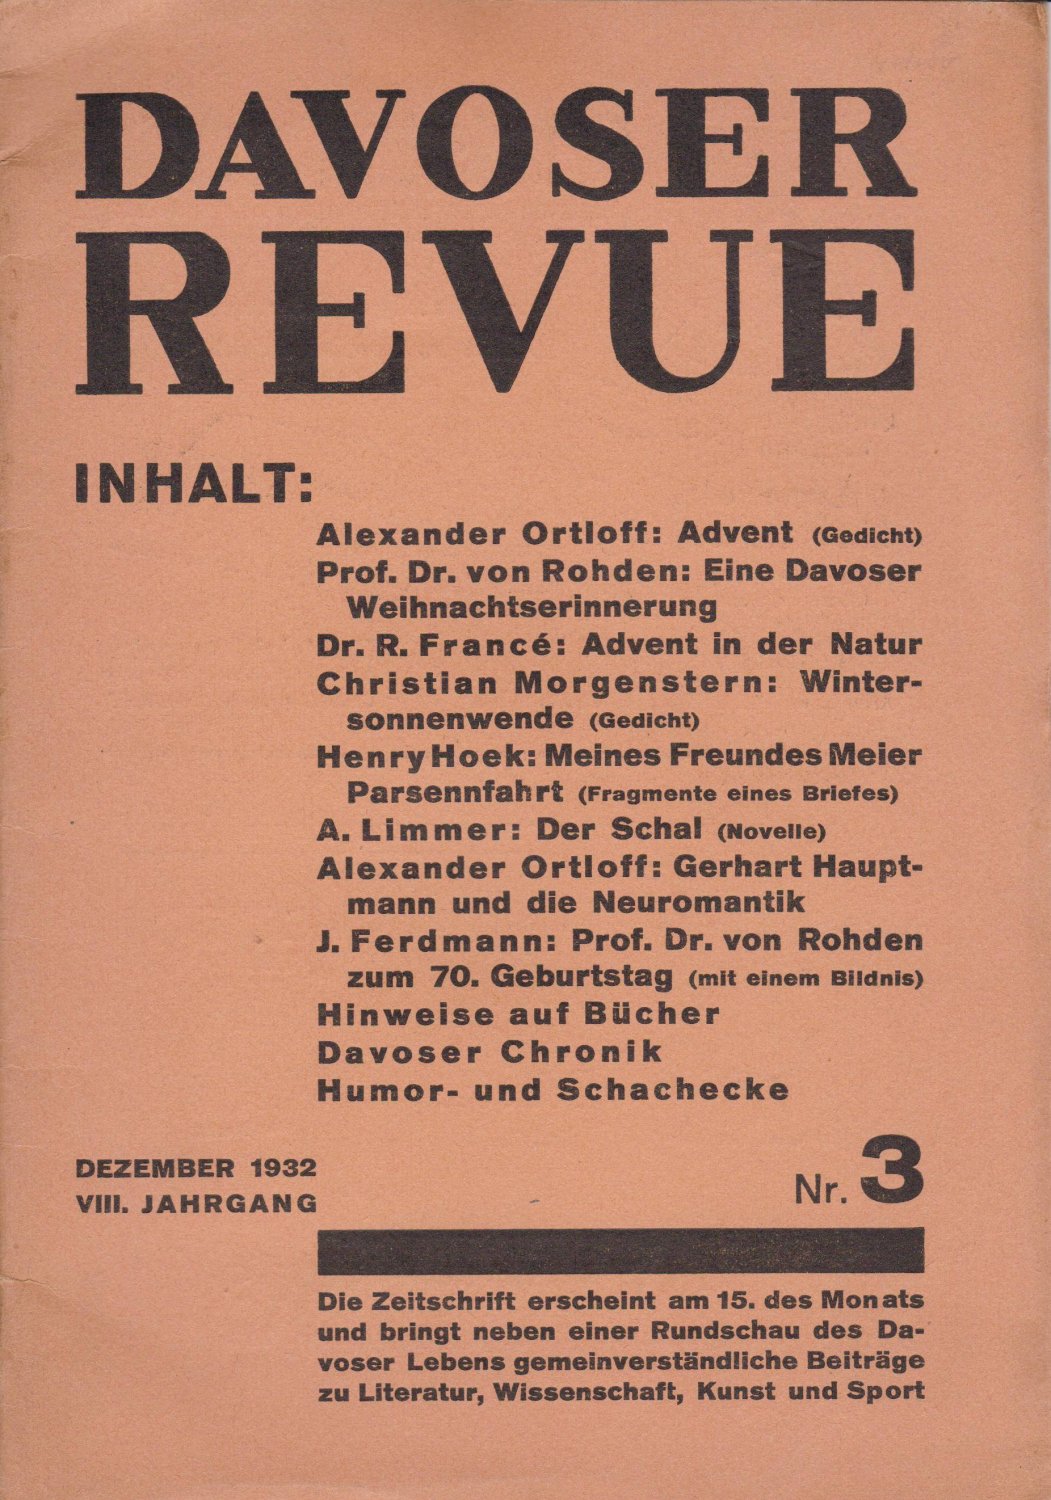   Davoser Revue. VIII. Jahrgang, Nummer 3, Dezember 1932. Zeitschrift für Literatur, Wissenschaft, Kunst und Sport. 